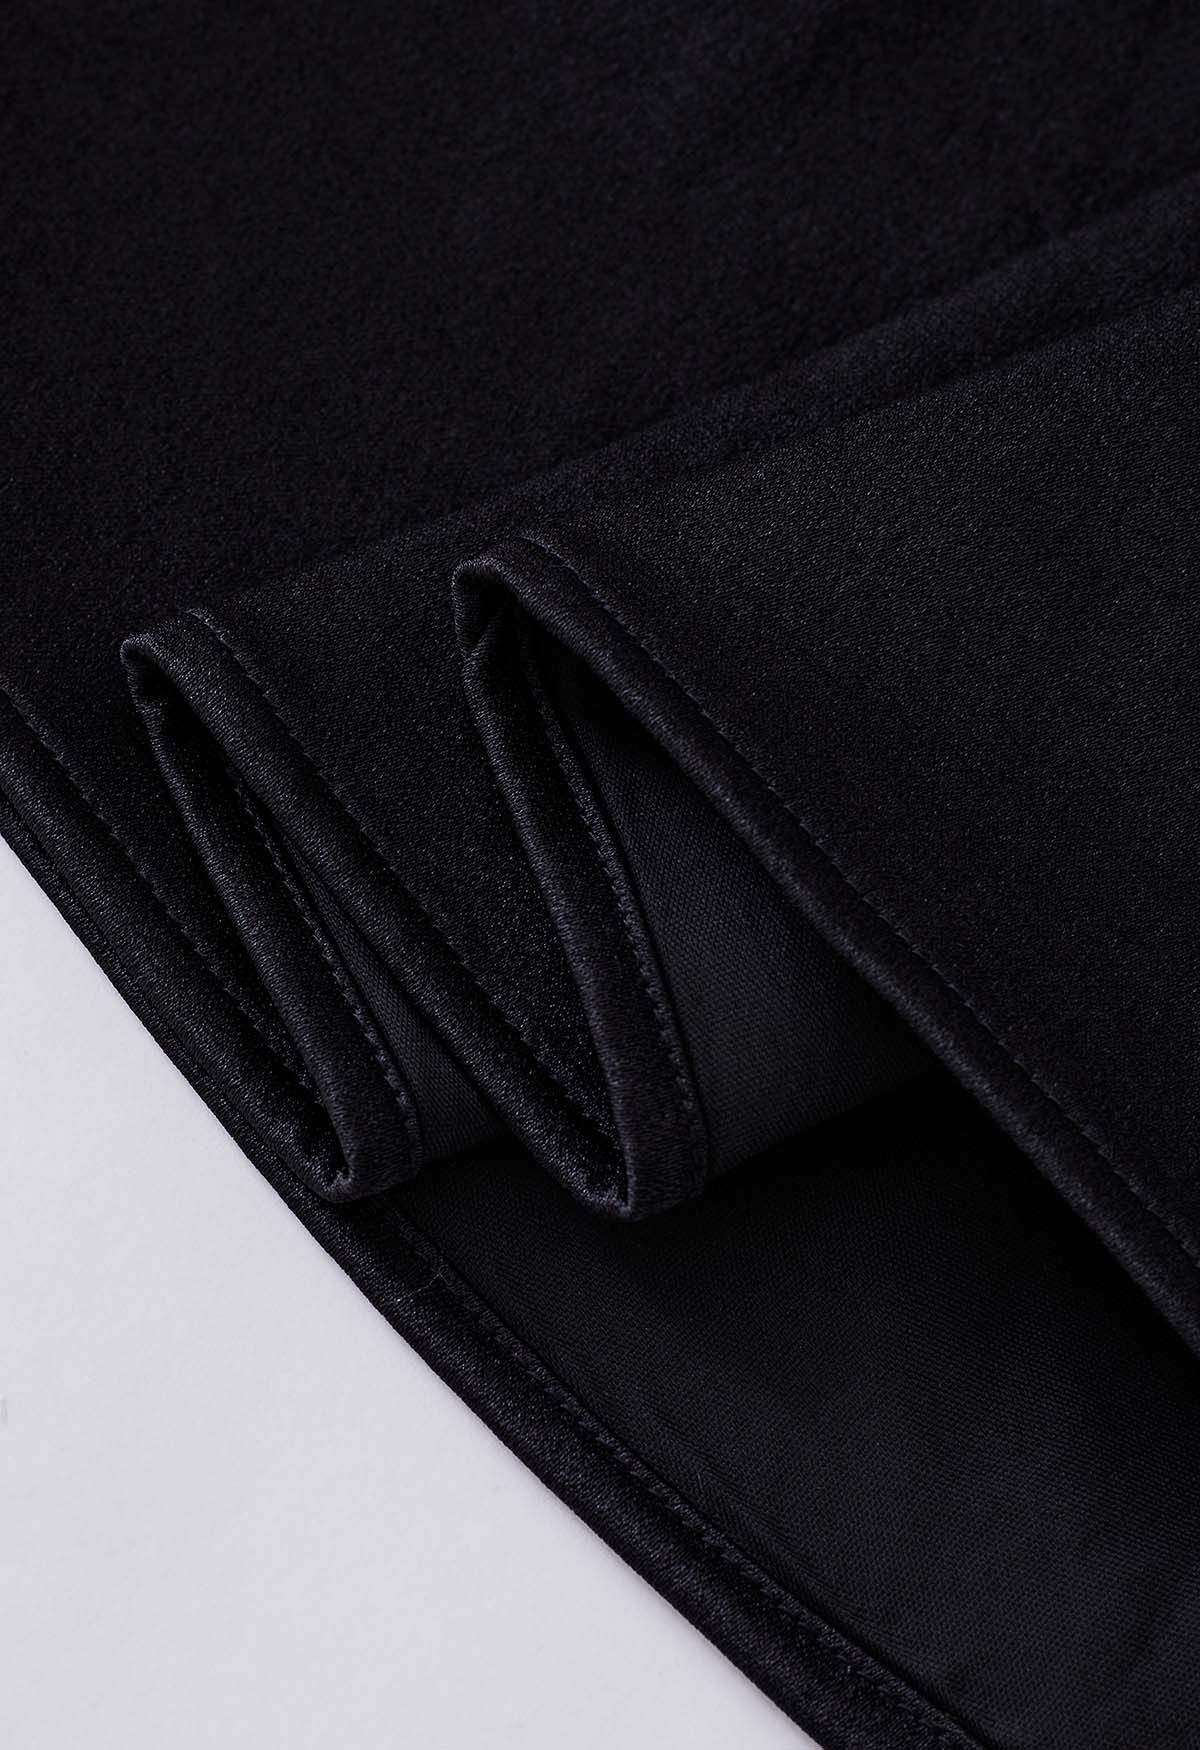 Élégante jupe mi-longue plissée avec ceinture en noir